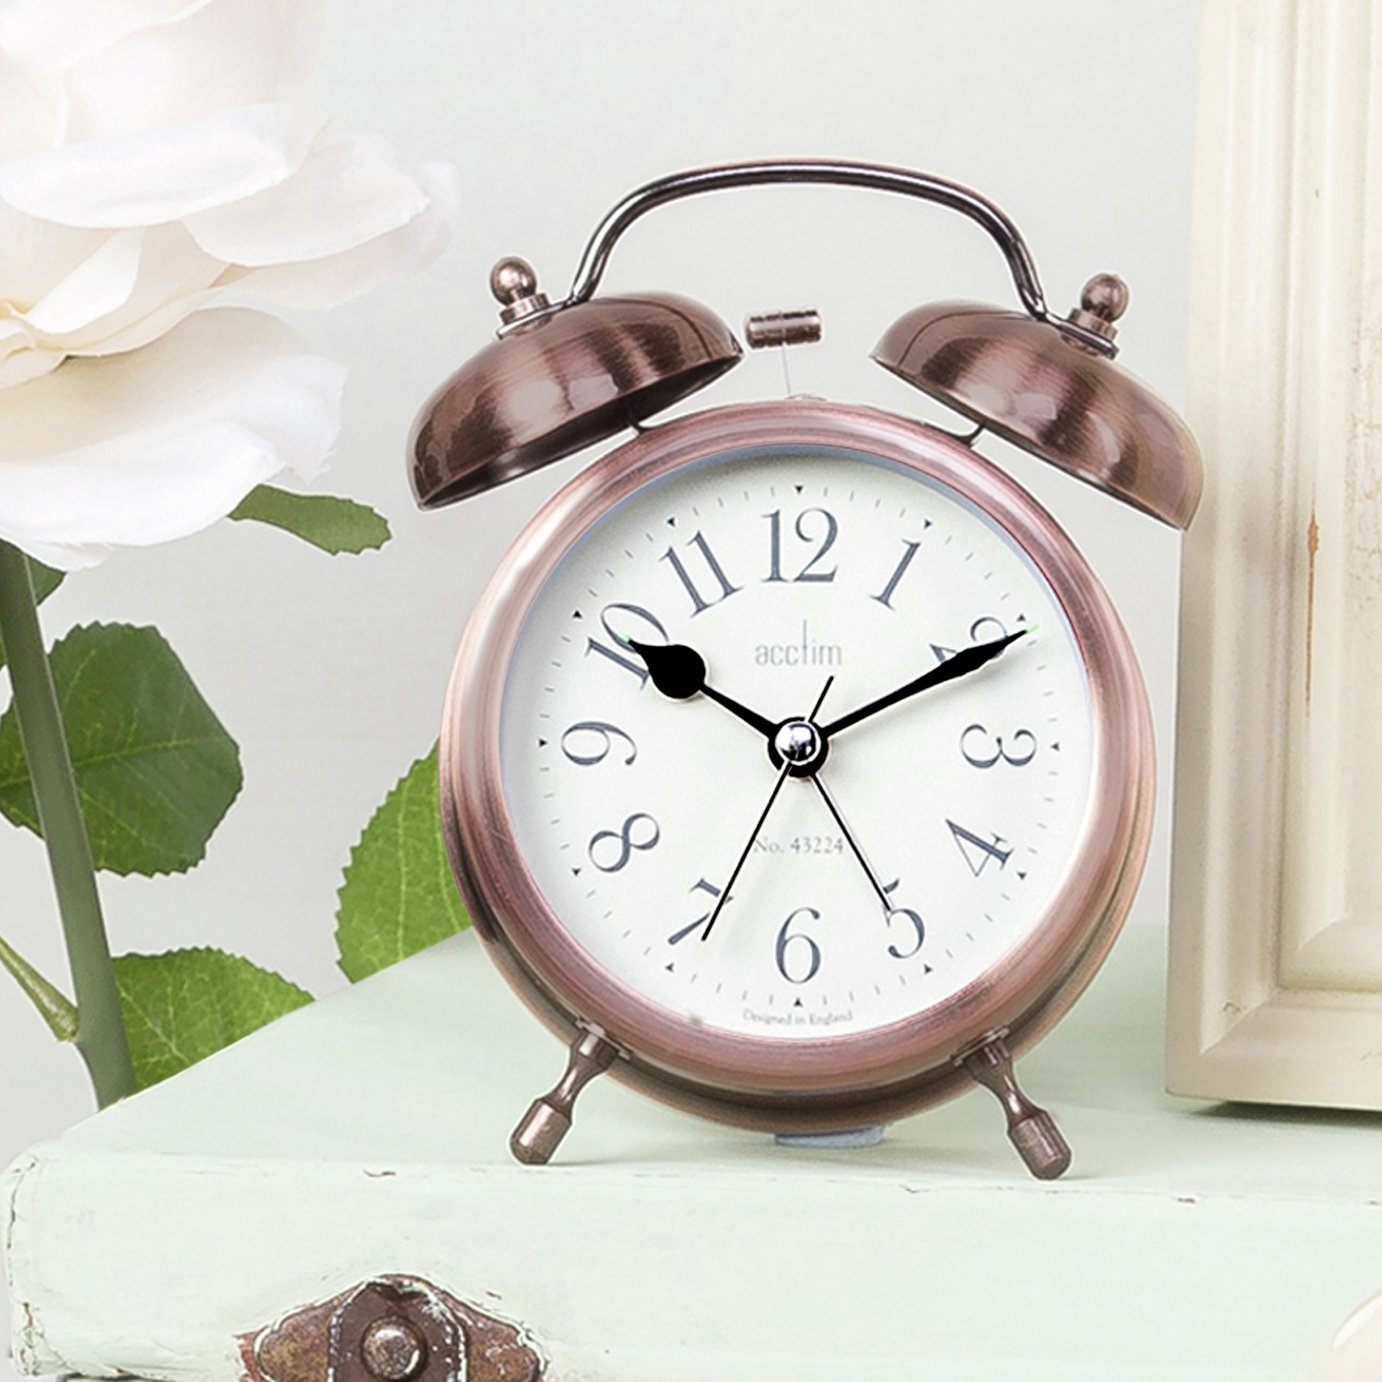 Acctim Pembridge Alarm Clock Review